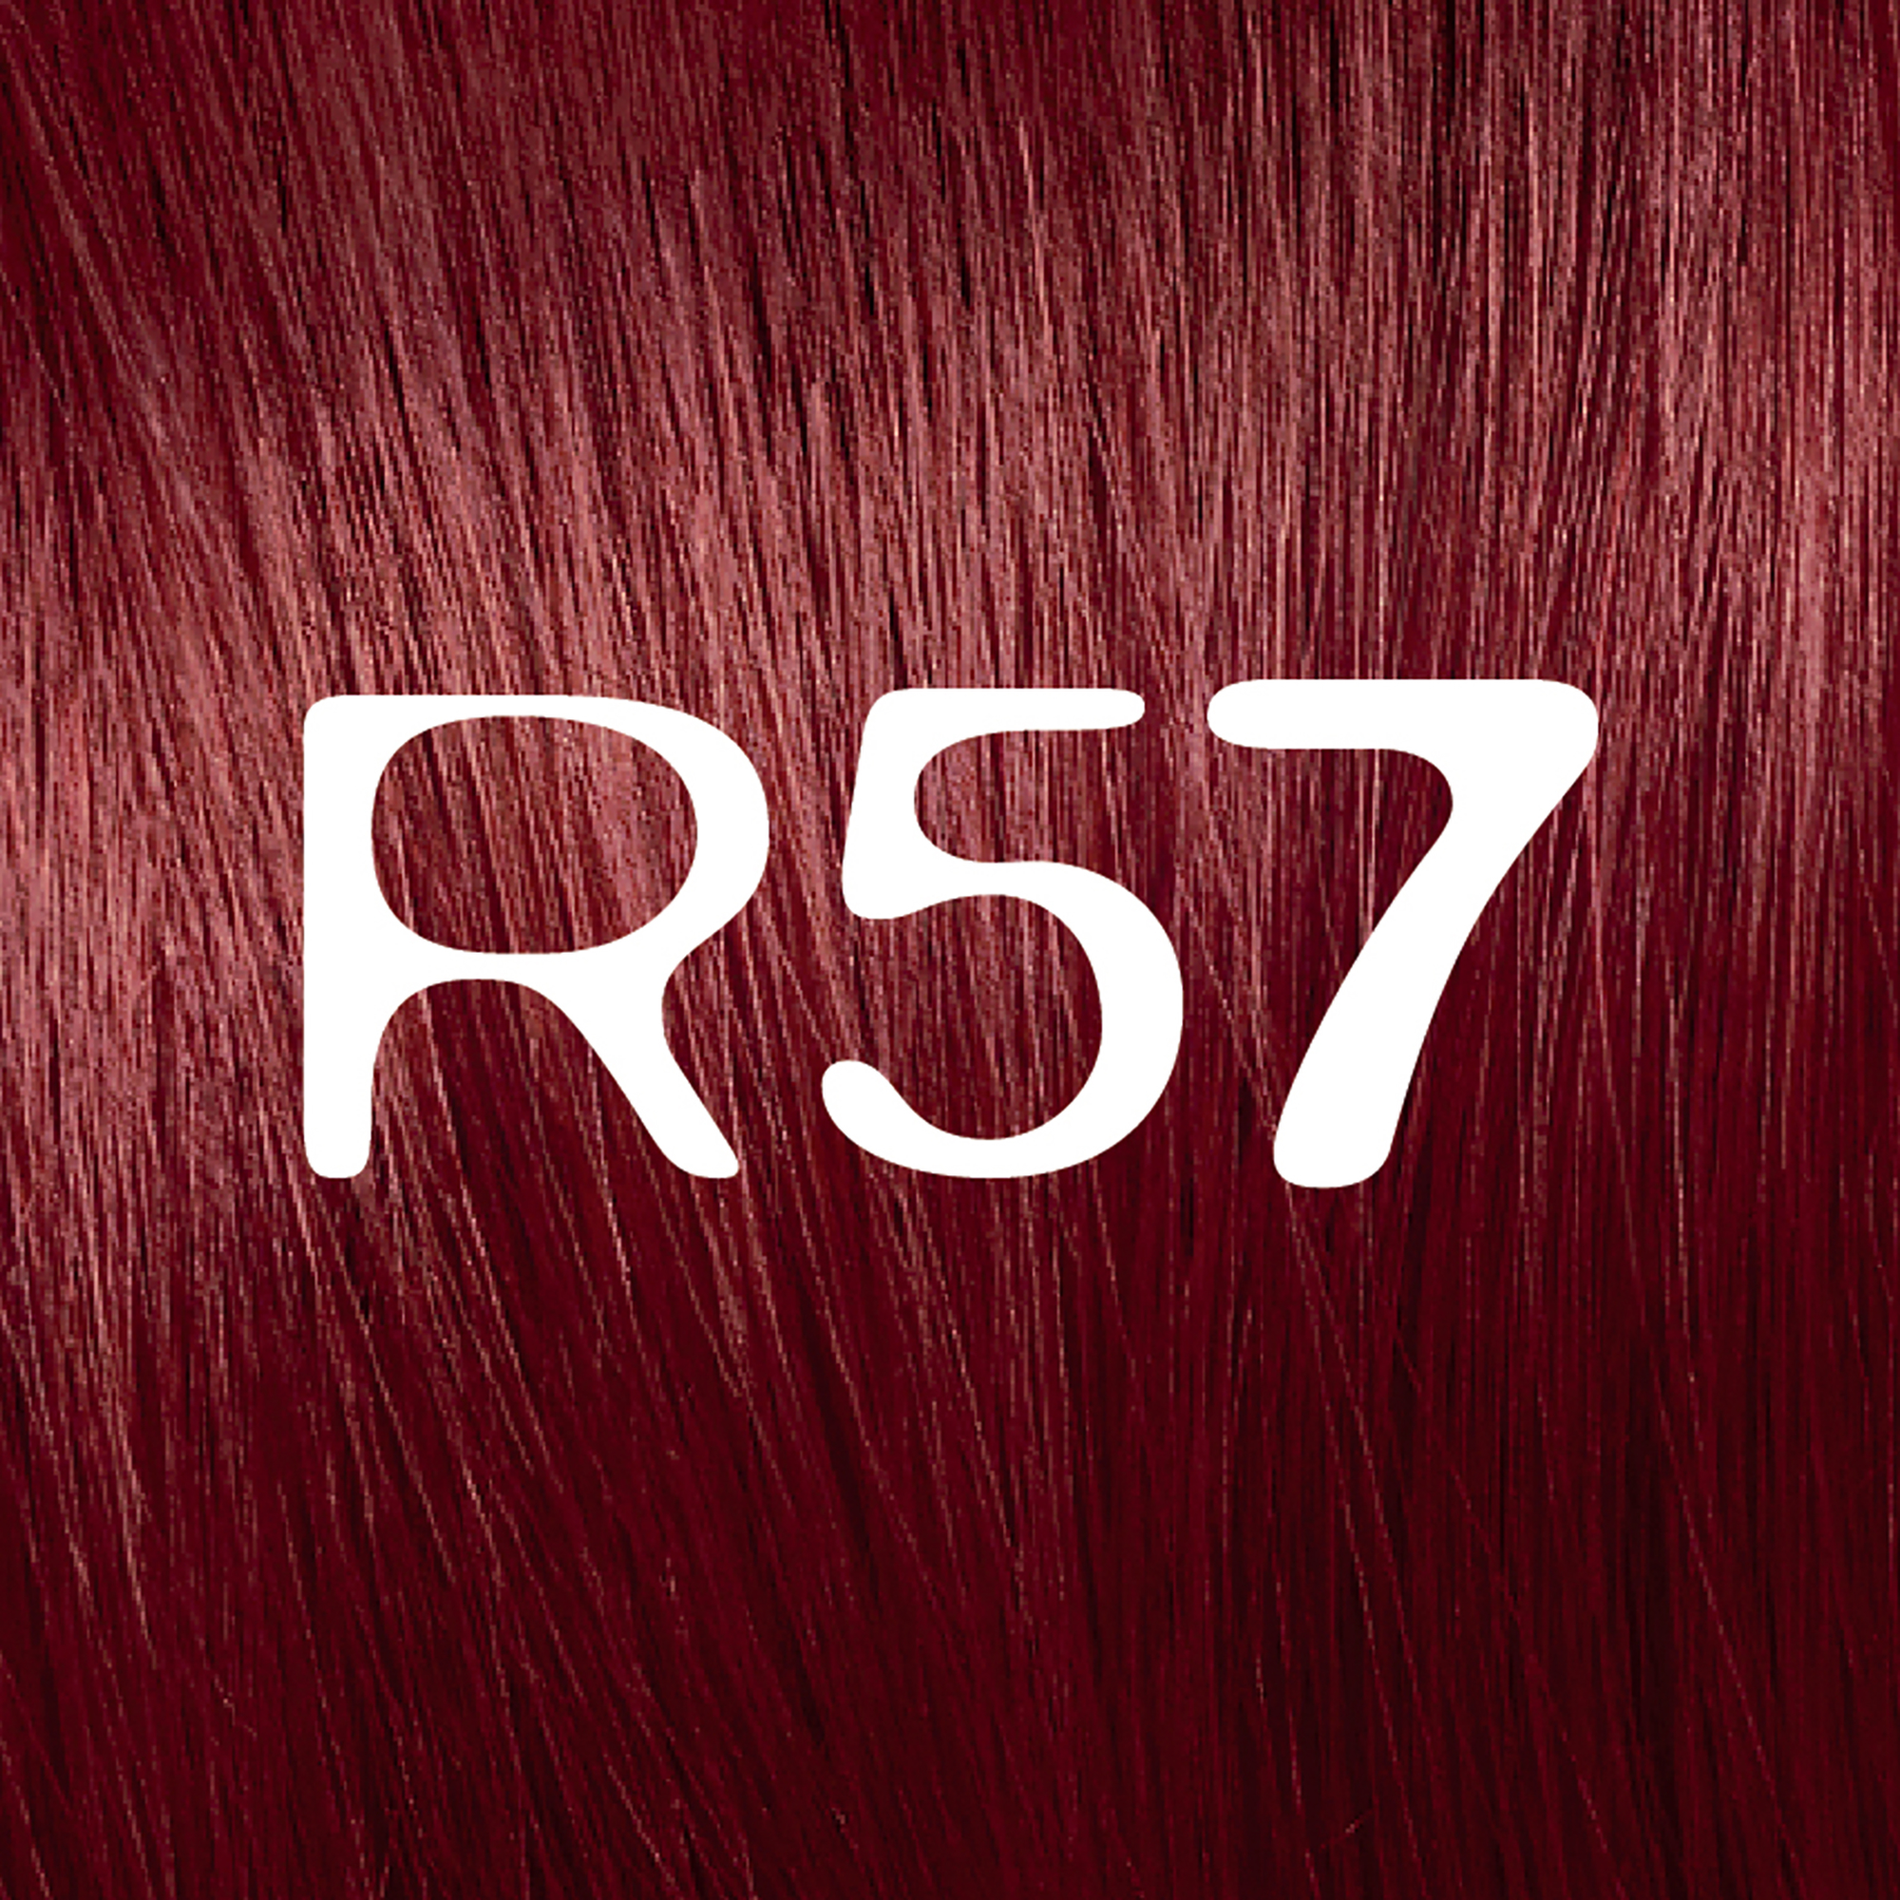 L'Oreal Paris Feria Permanent Hair Color, R57 Cherry Crush Intense Medium Auburn - image 3 of 9